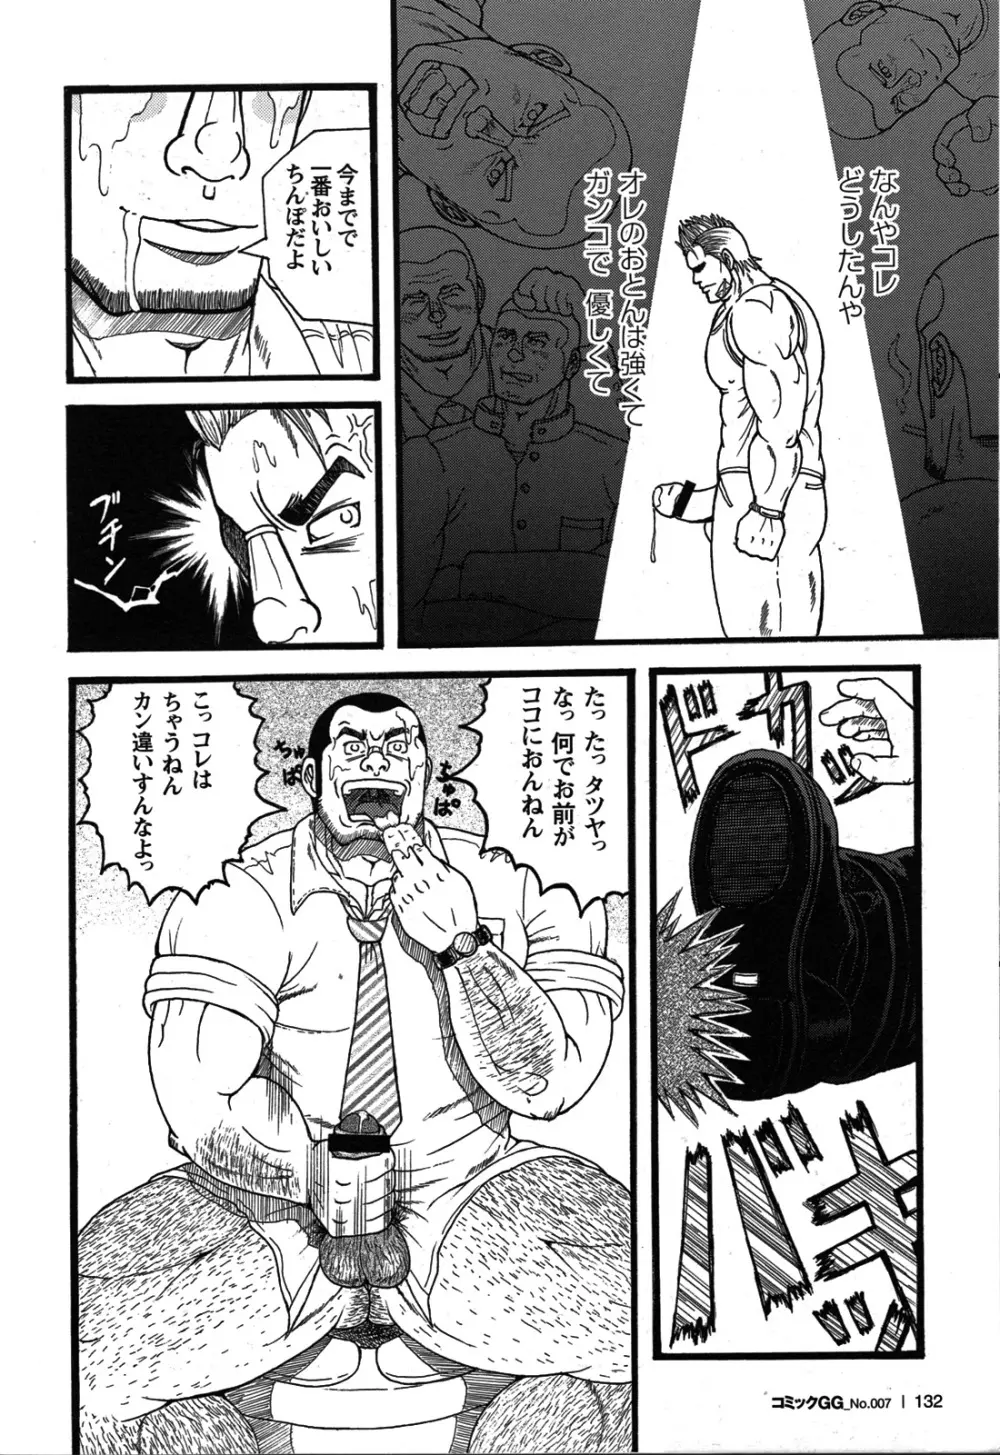 Comic G-men Gaho No.07 117ページ